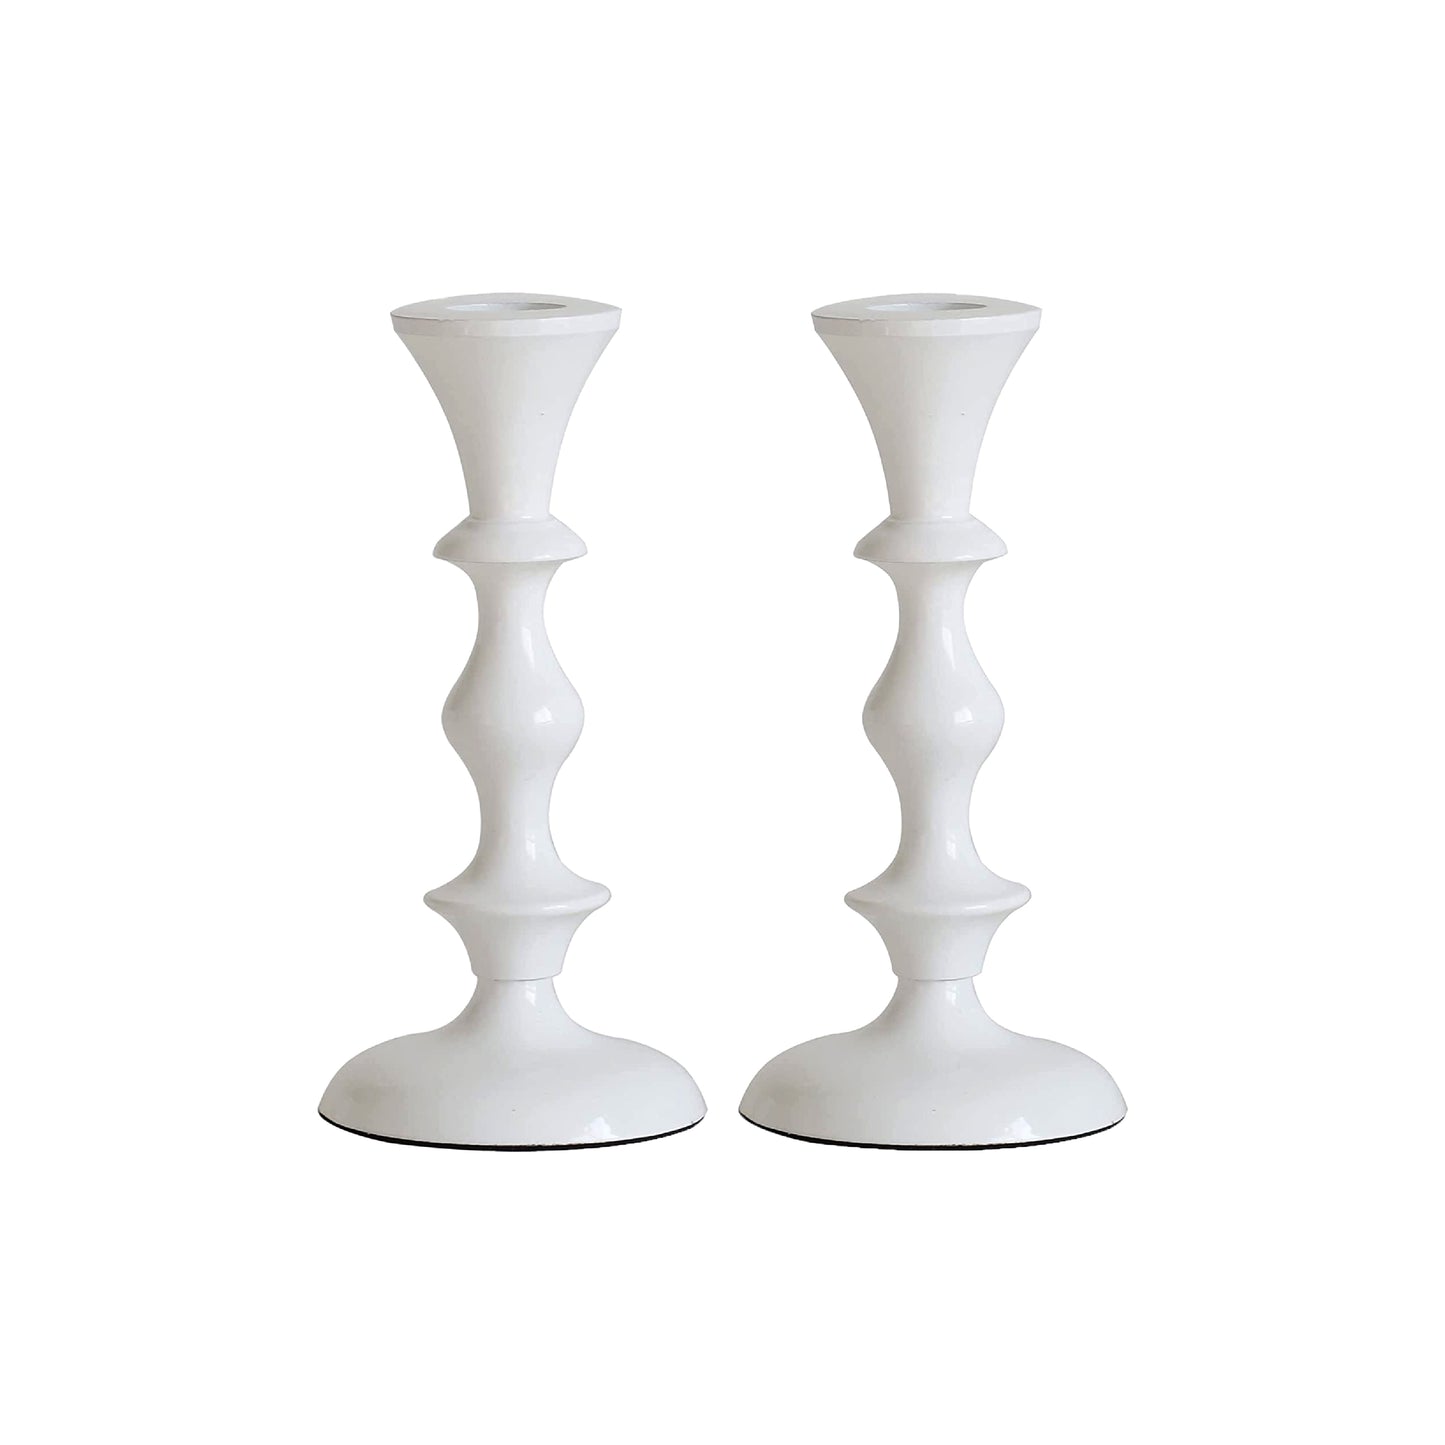 Medium Candle Holder Set of 2 - White